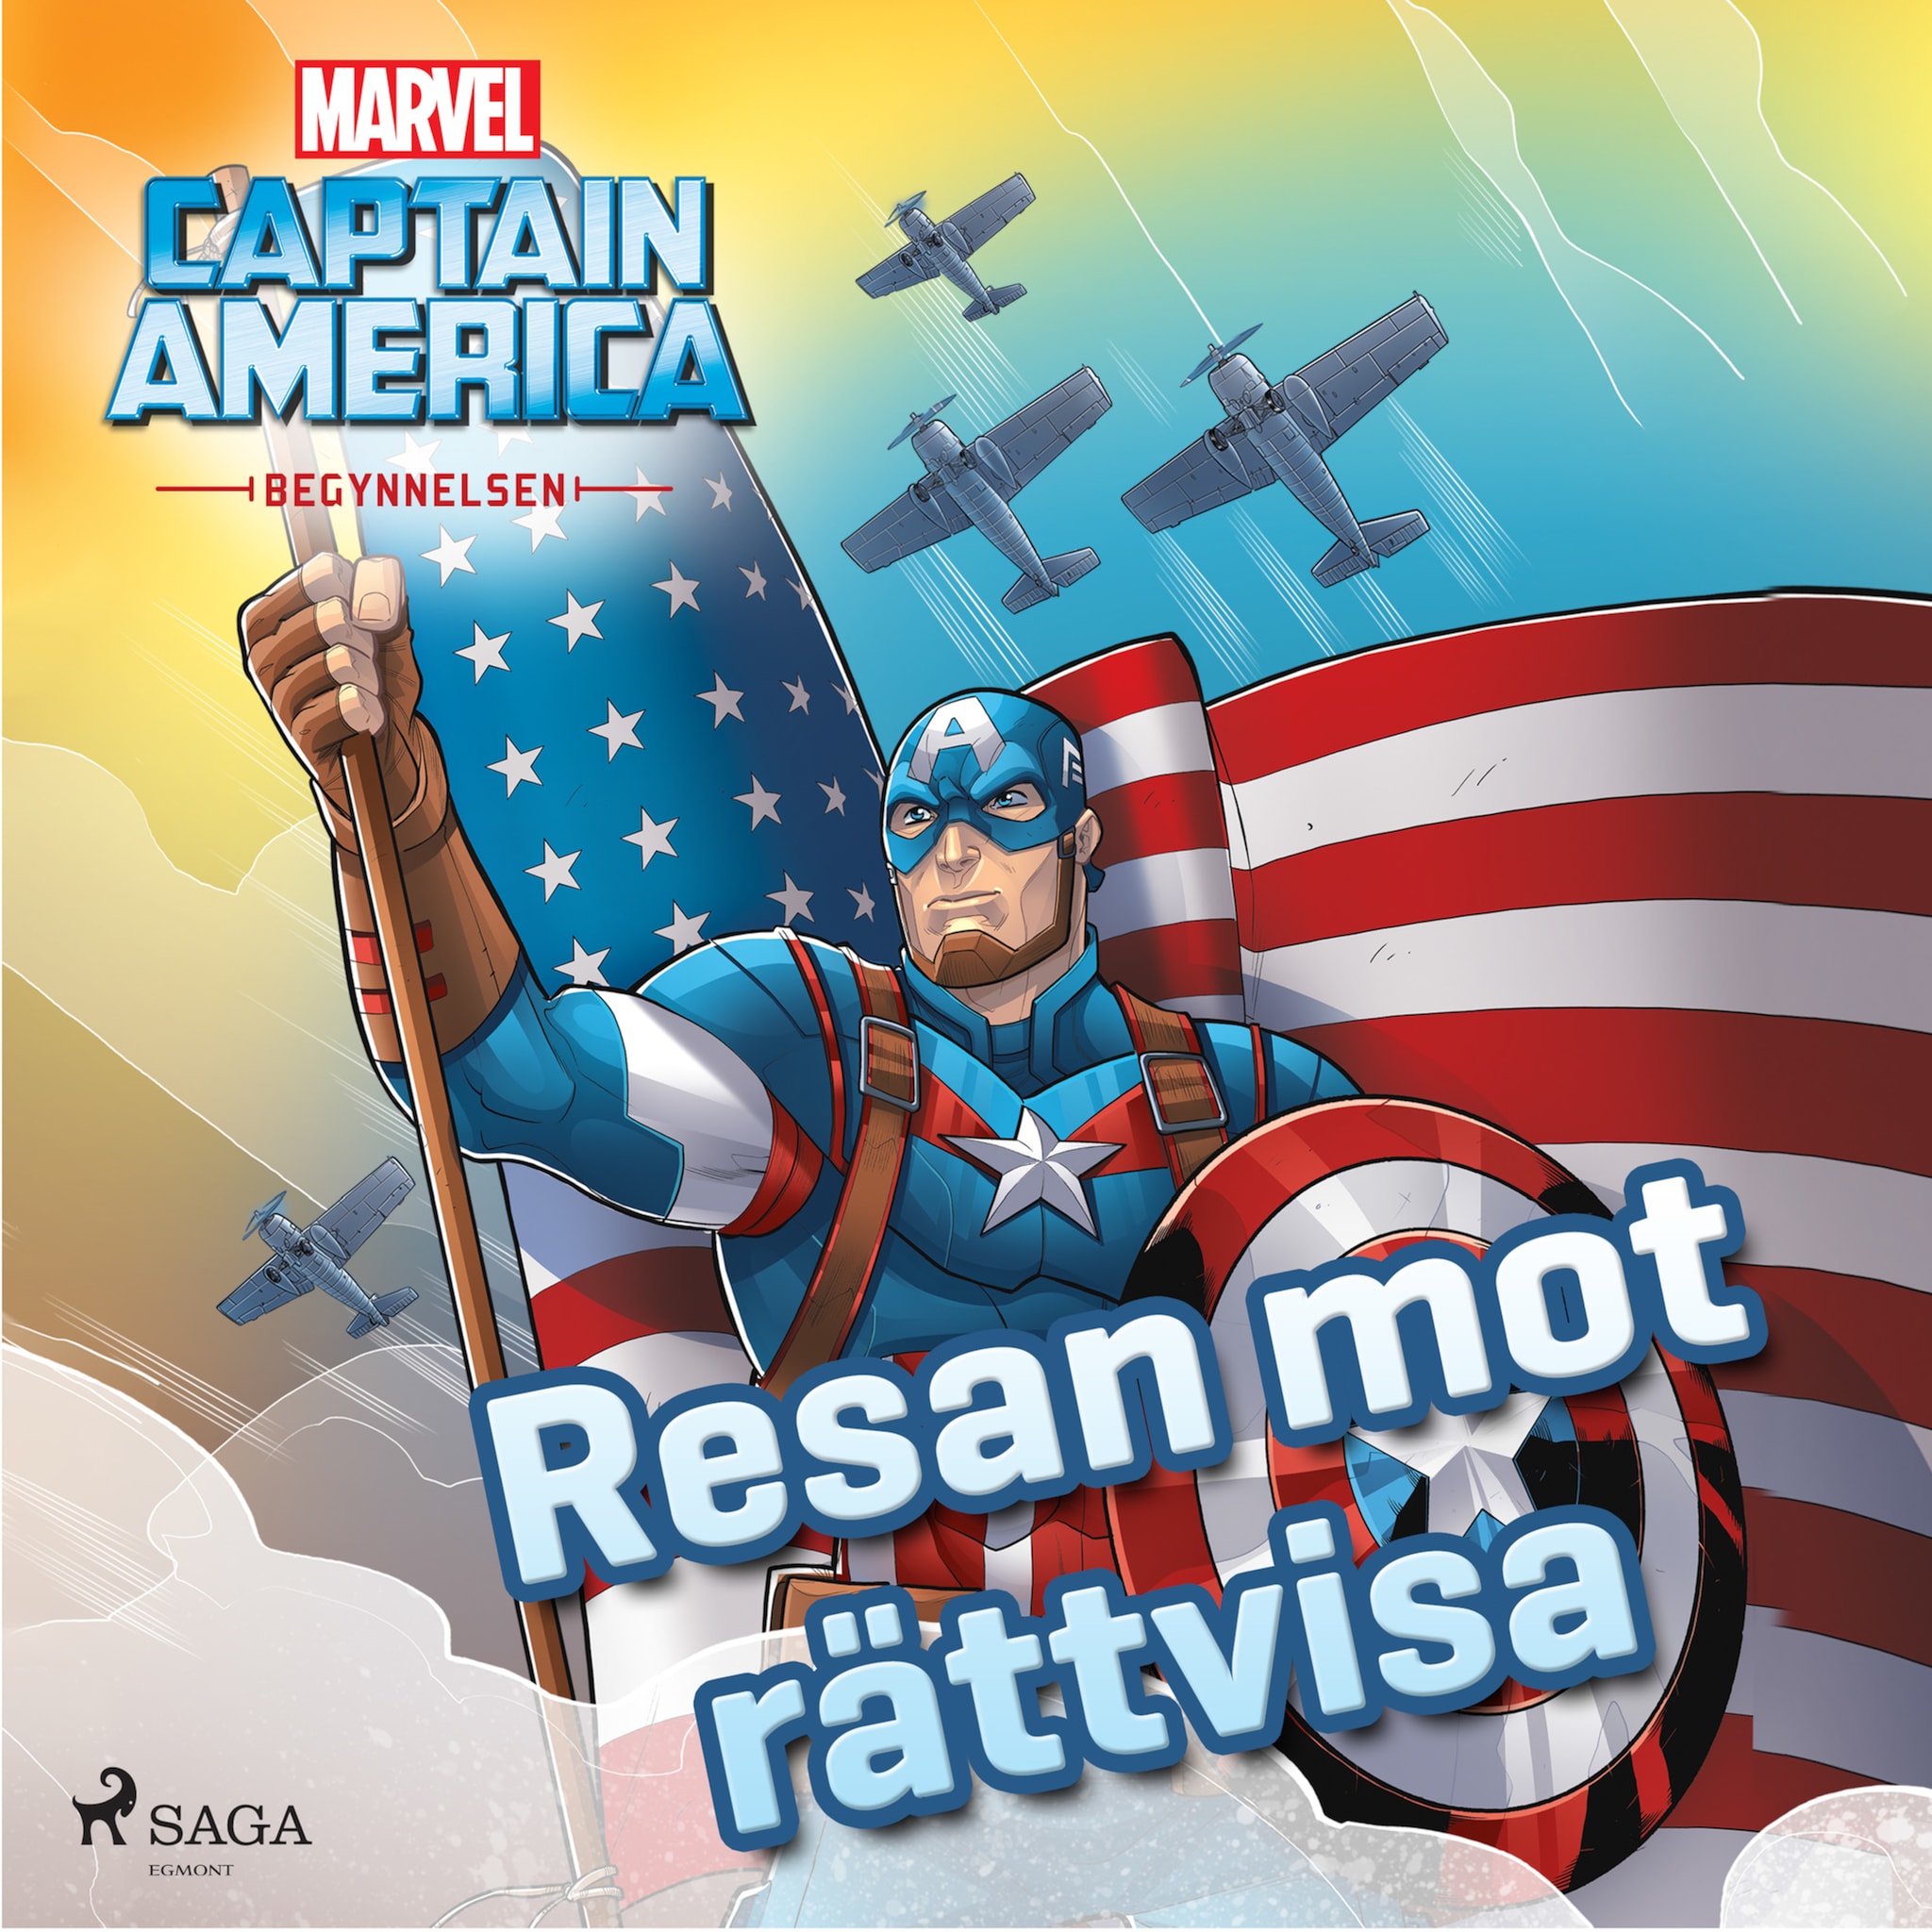 Captain America – Begynnelsen –  Resan mot rättvisa ilmaiseksi